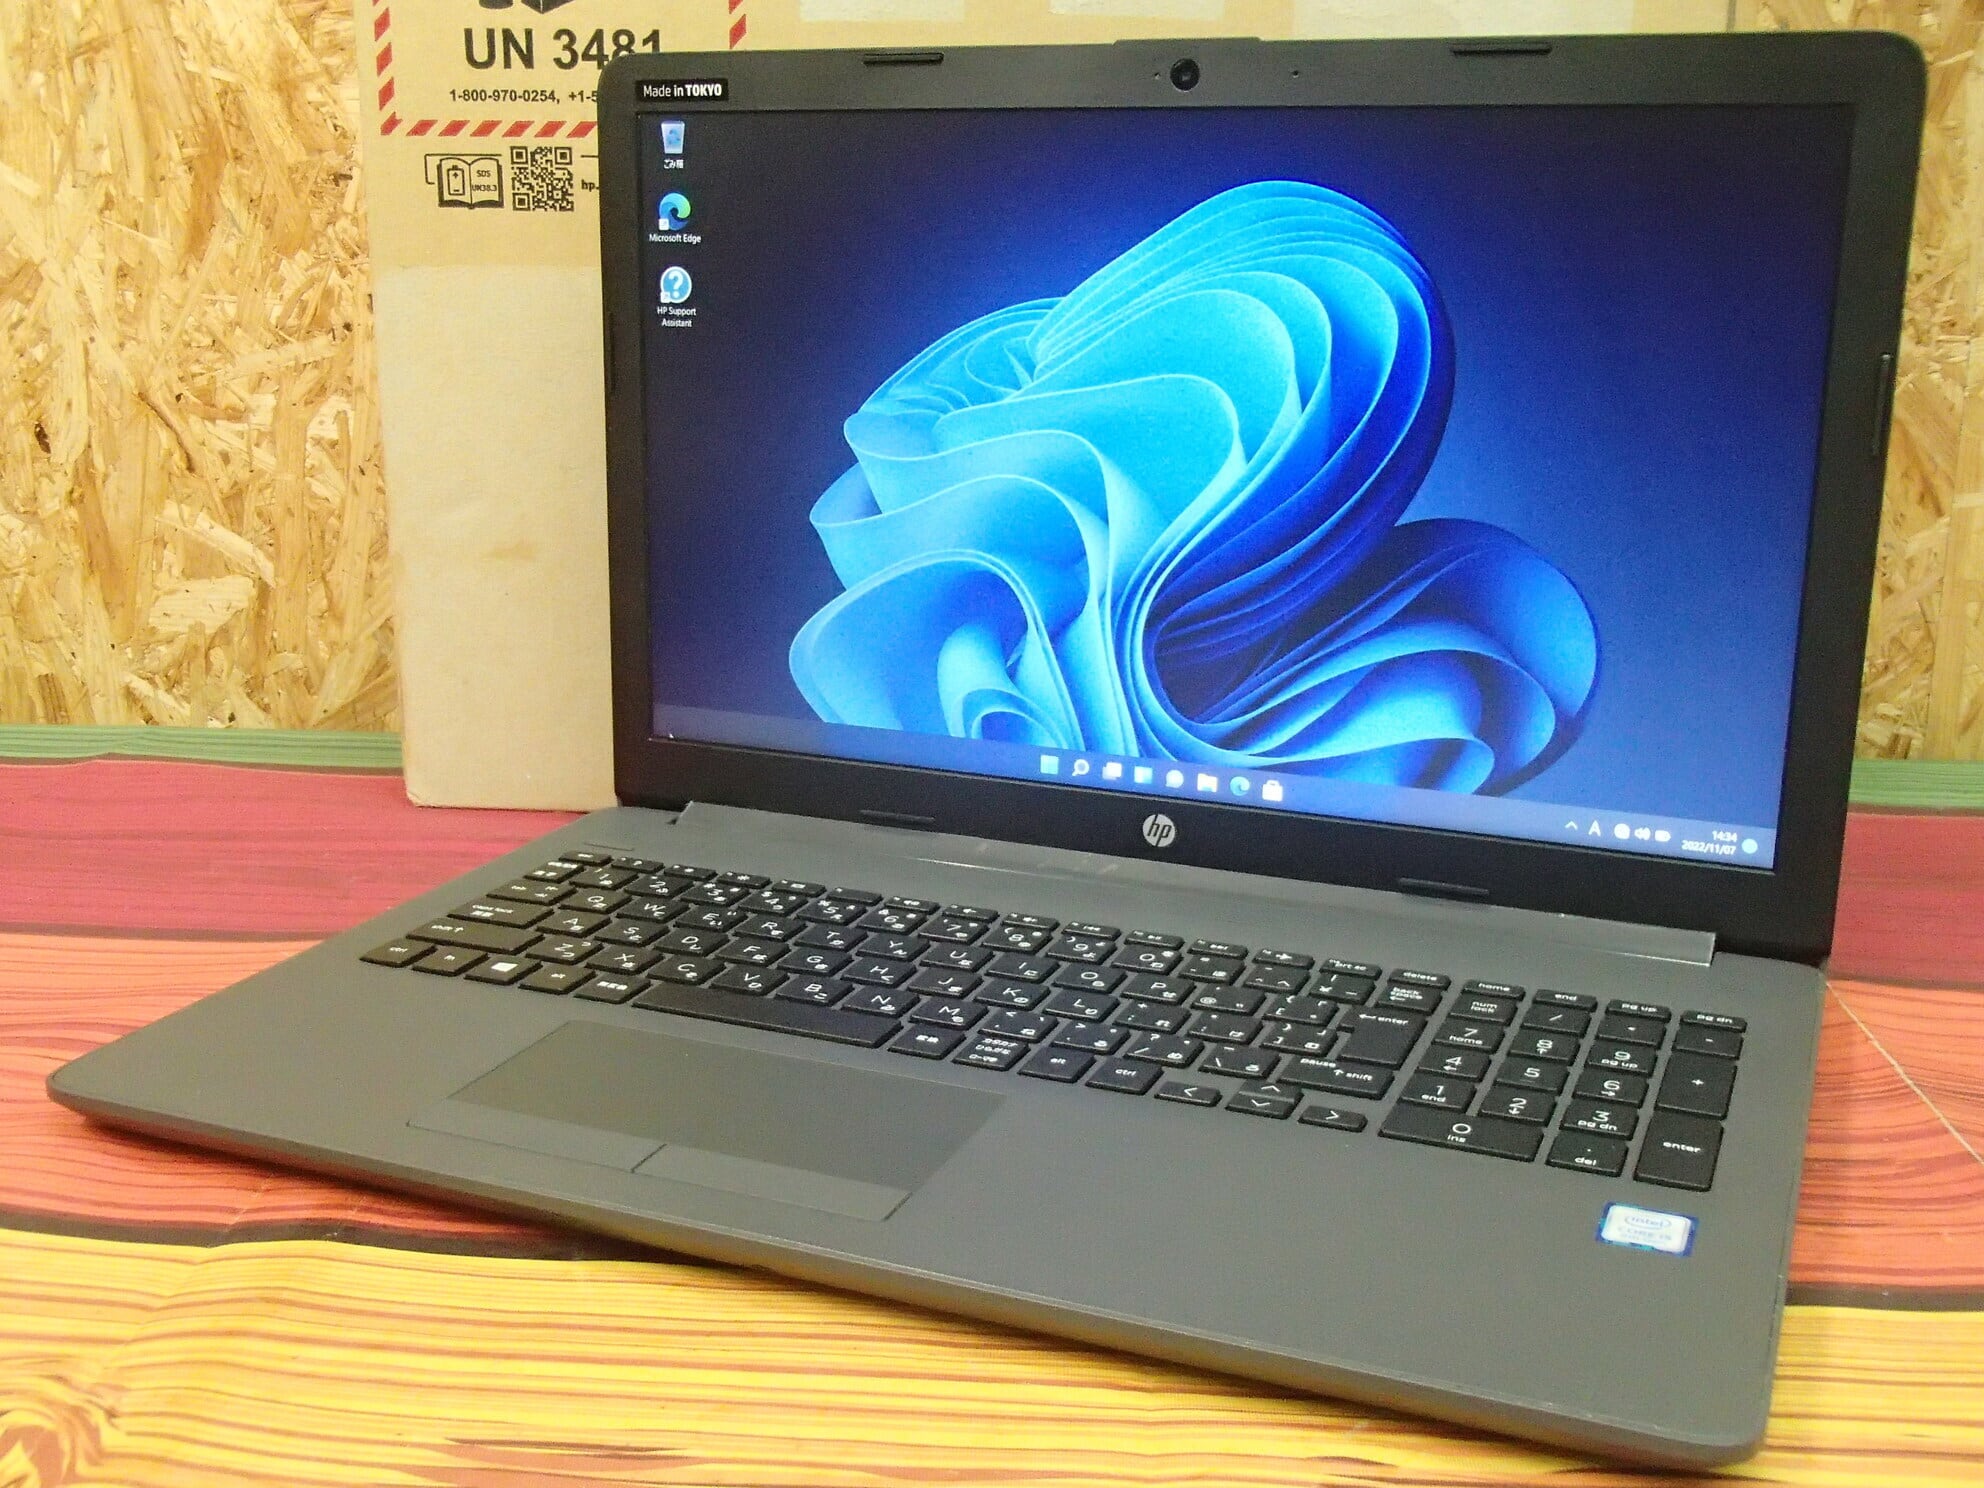 【ランク B】HP 250 G7 Notebook PC 5KX41AV 第8世代 Core i5 ...